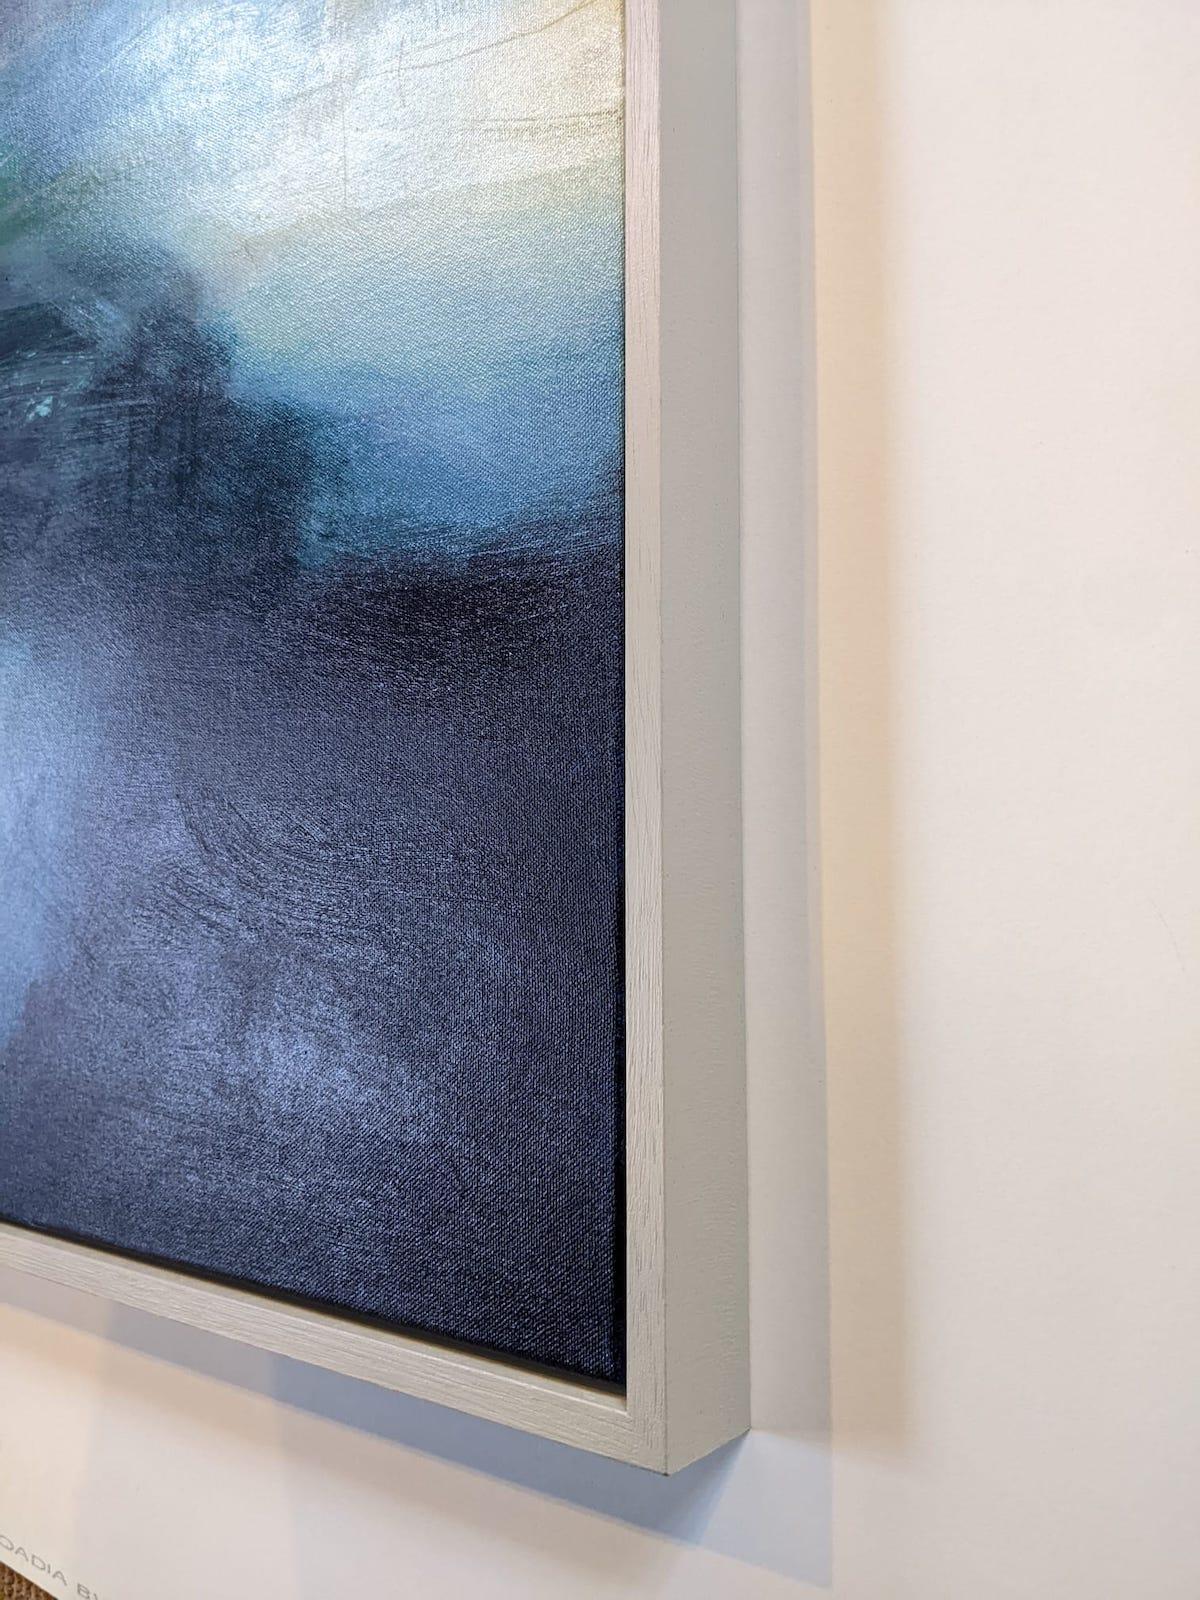 Stepping Out est un paysage abstrait original peint par l'artiste Carole Chappell. Cette peinture de paysage atmosphérique présente des formes abstraites et des marques gestuelles, ainsi qu'une belle utilisation des motifs. L'artiste commente :